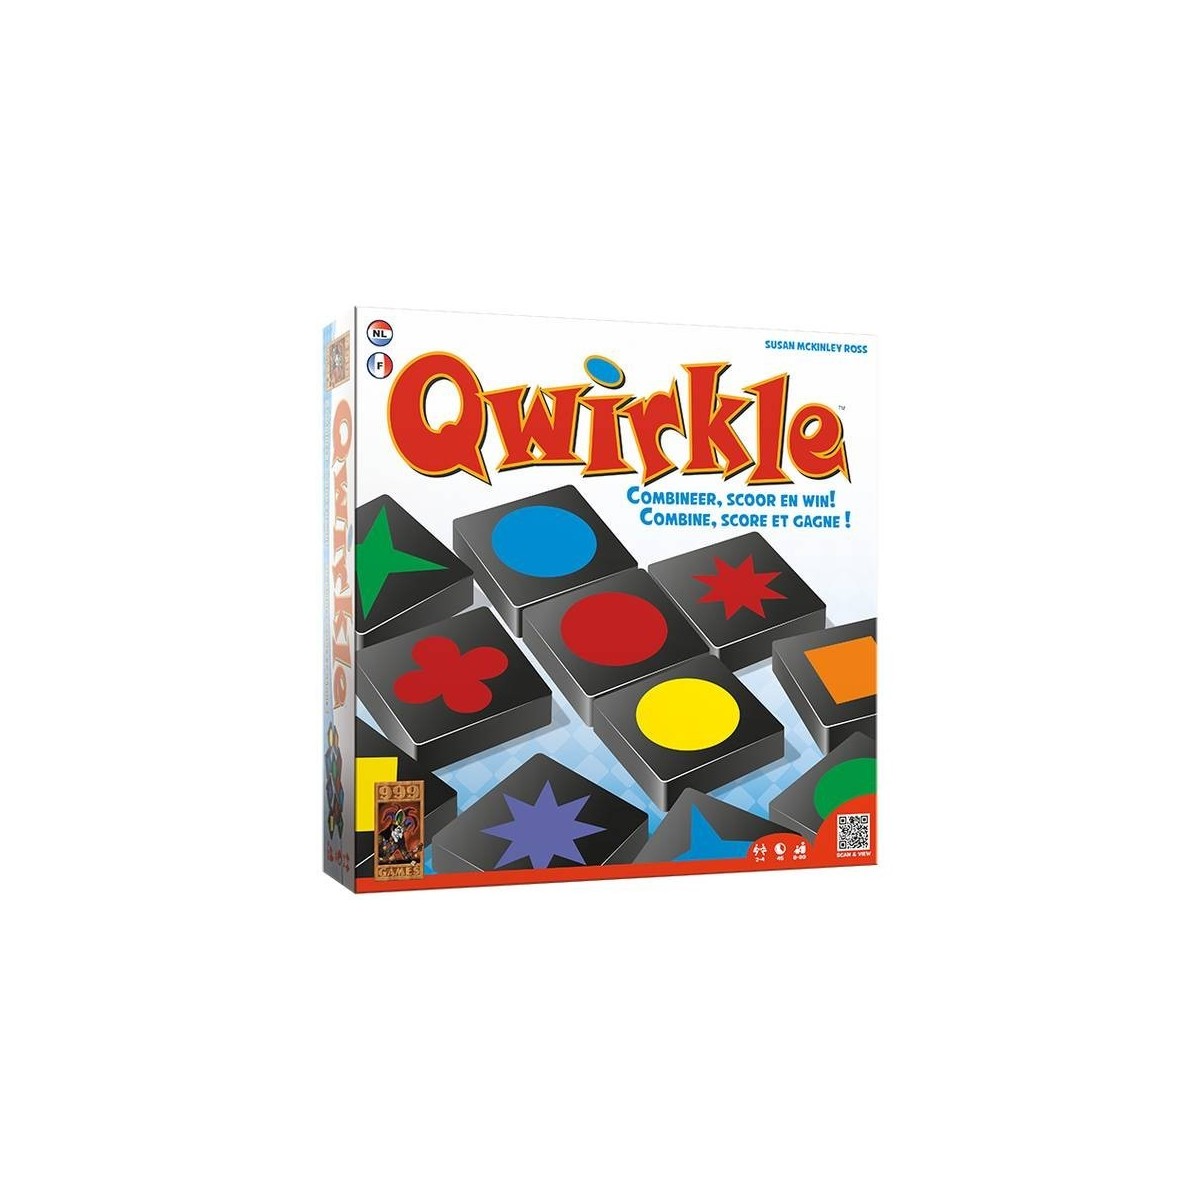 Qwirkle, en uitdagend met elementen van Set en Scrabble